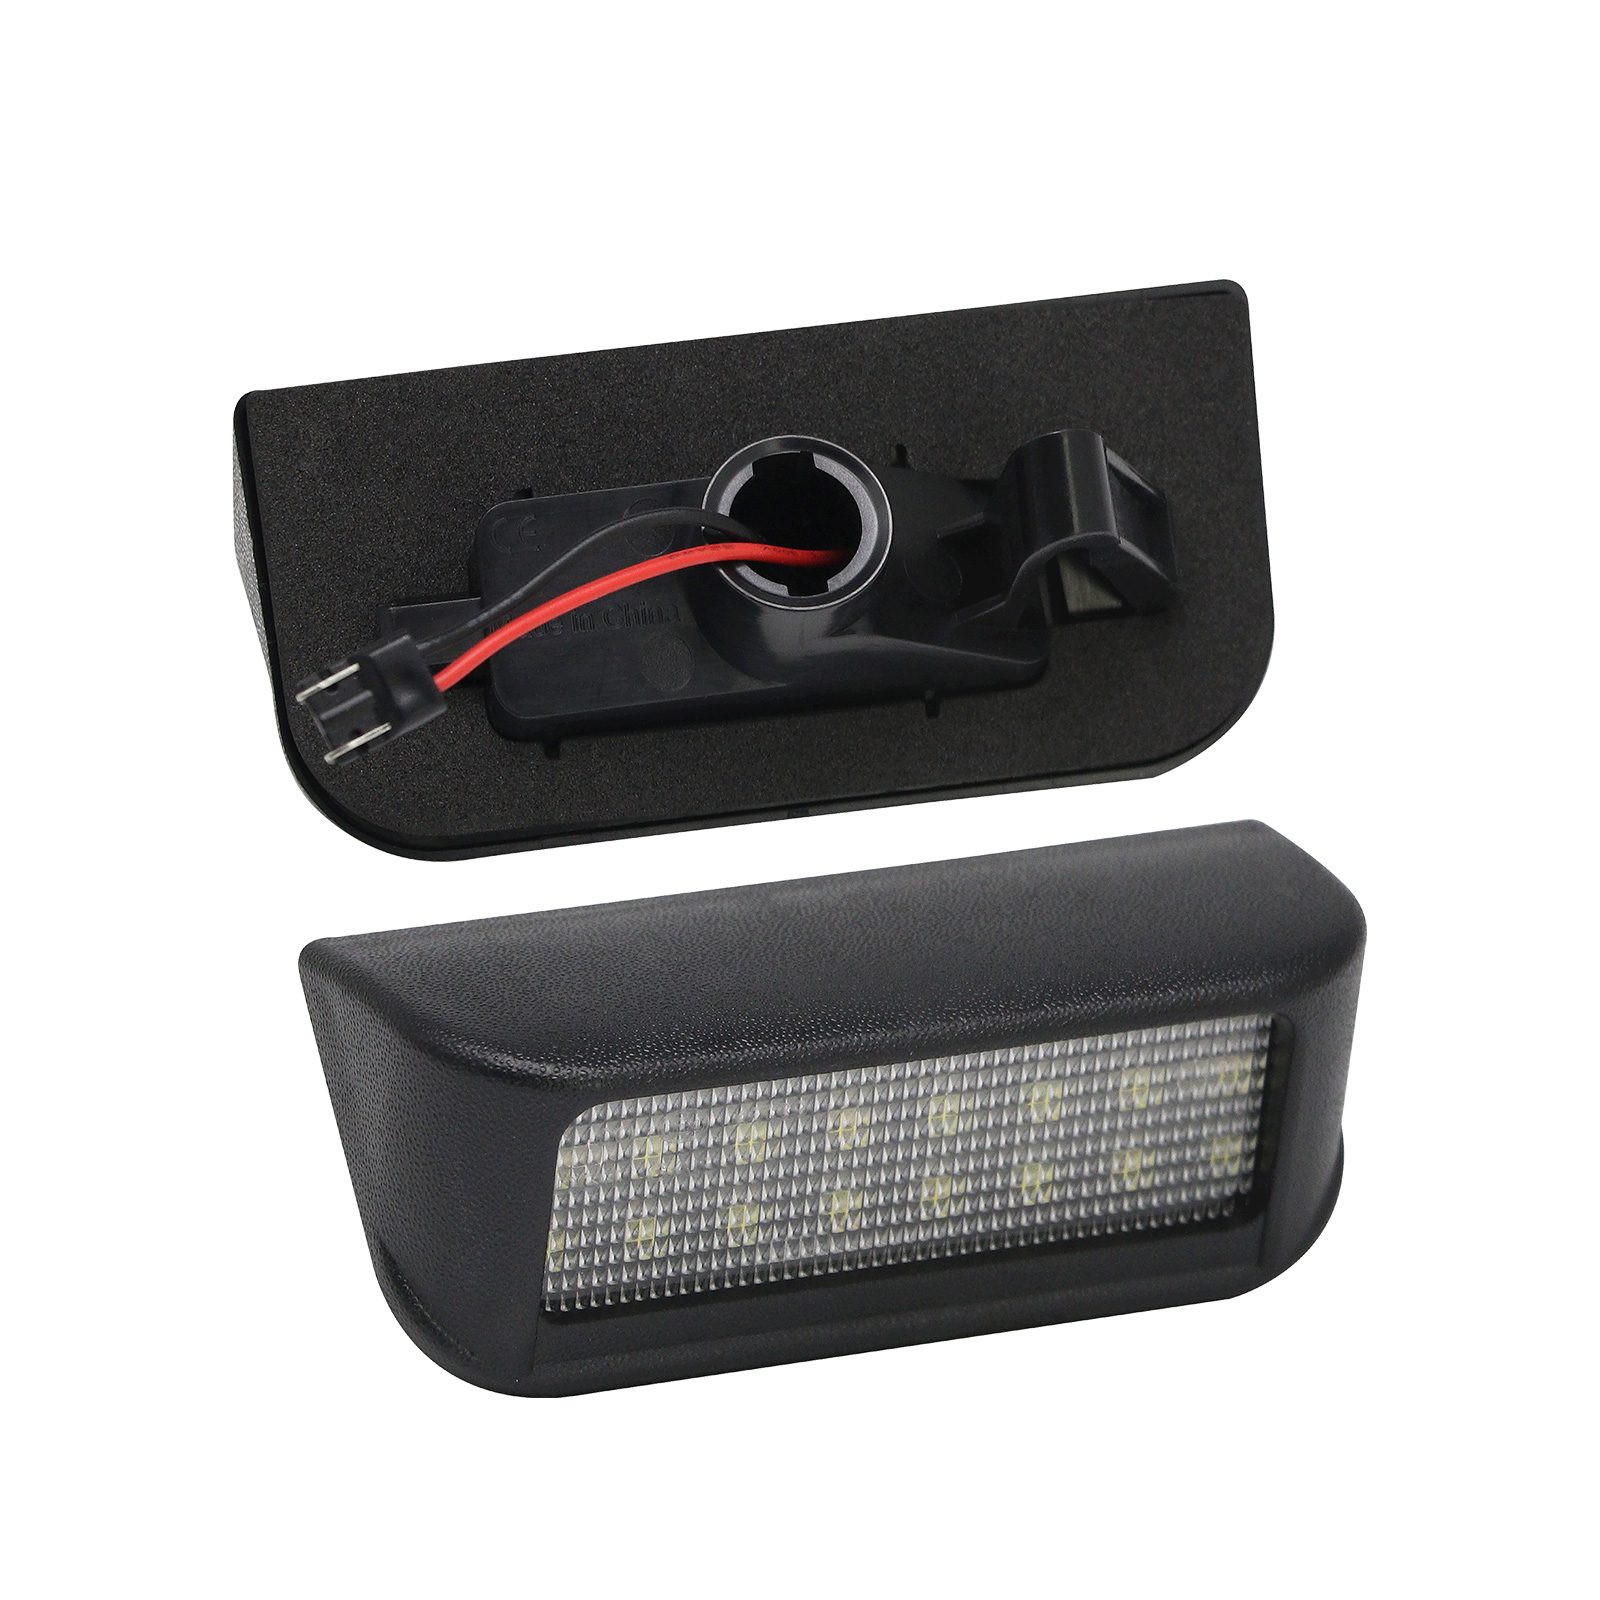  LEDFEWAG 2 Pièces LED Éclairage plaque immatriculation auto  Compatibile pour Citroen C3 C4 C5 C6 Peugeot 407 406 306 307 308